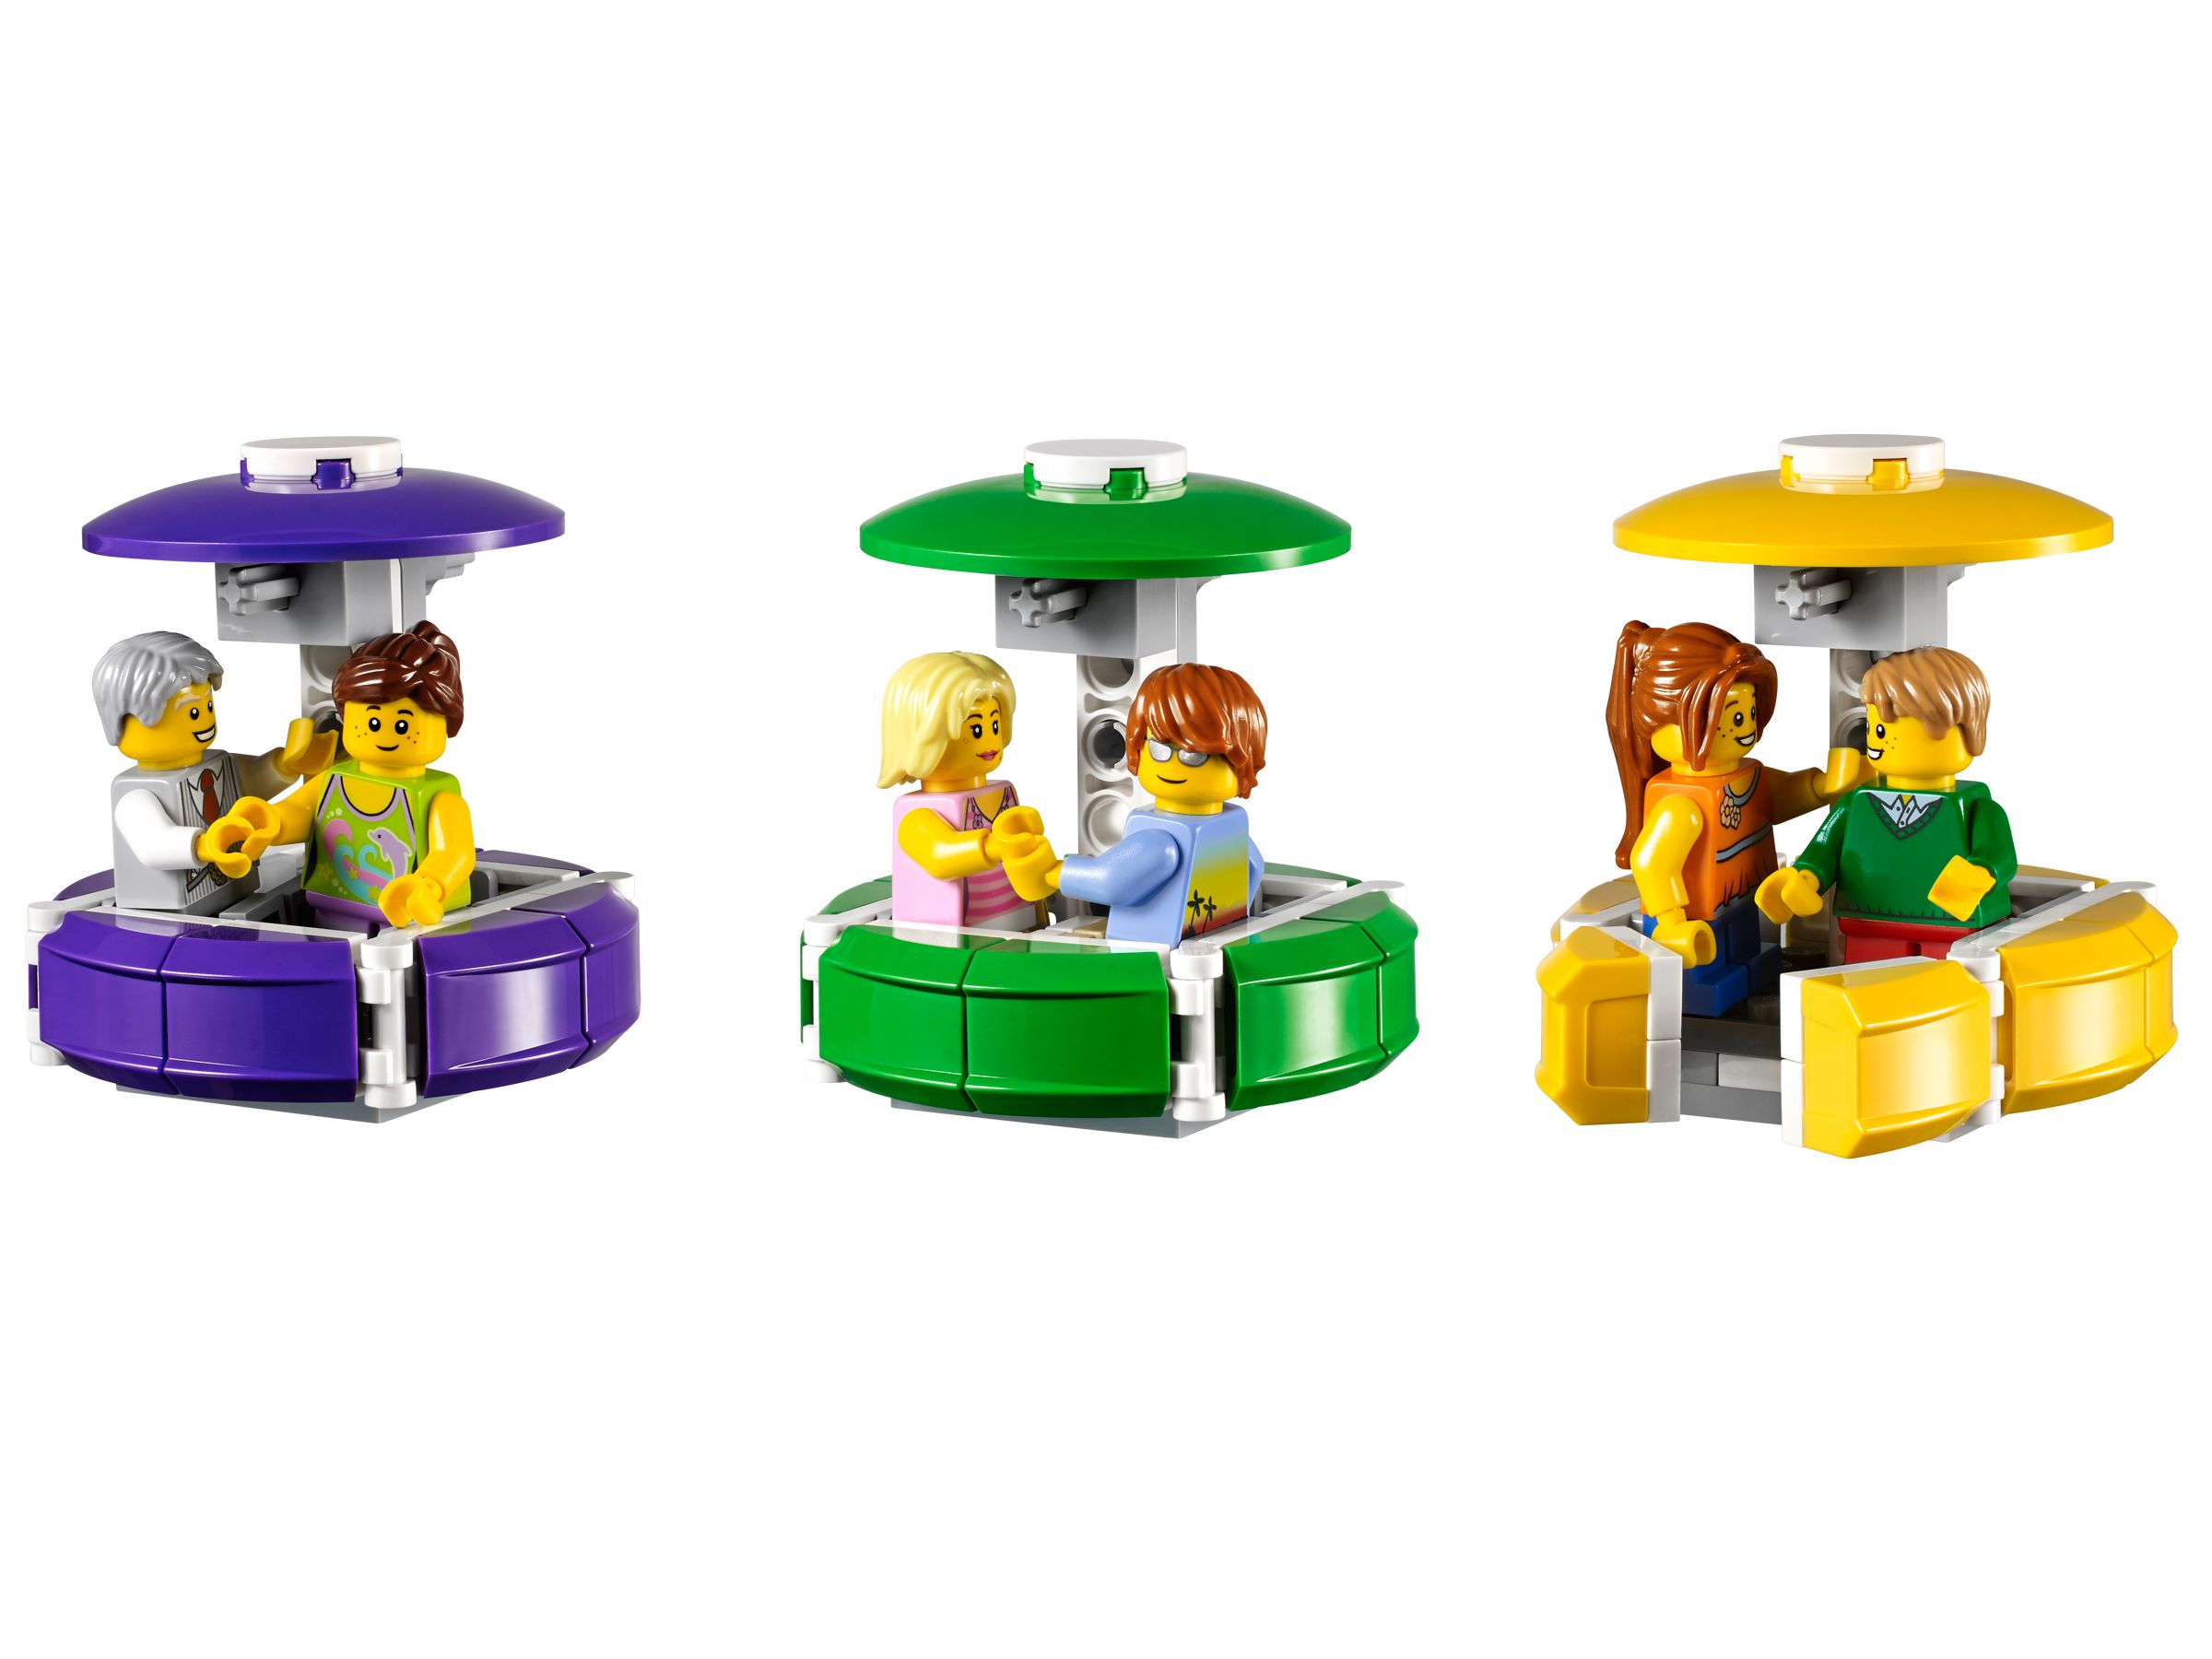 LEGO Advanced Models 10247 Riesenrad (Ferris Wheel) LEGO_10247_alt6.jpg